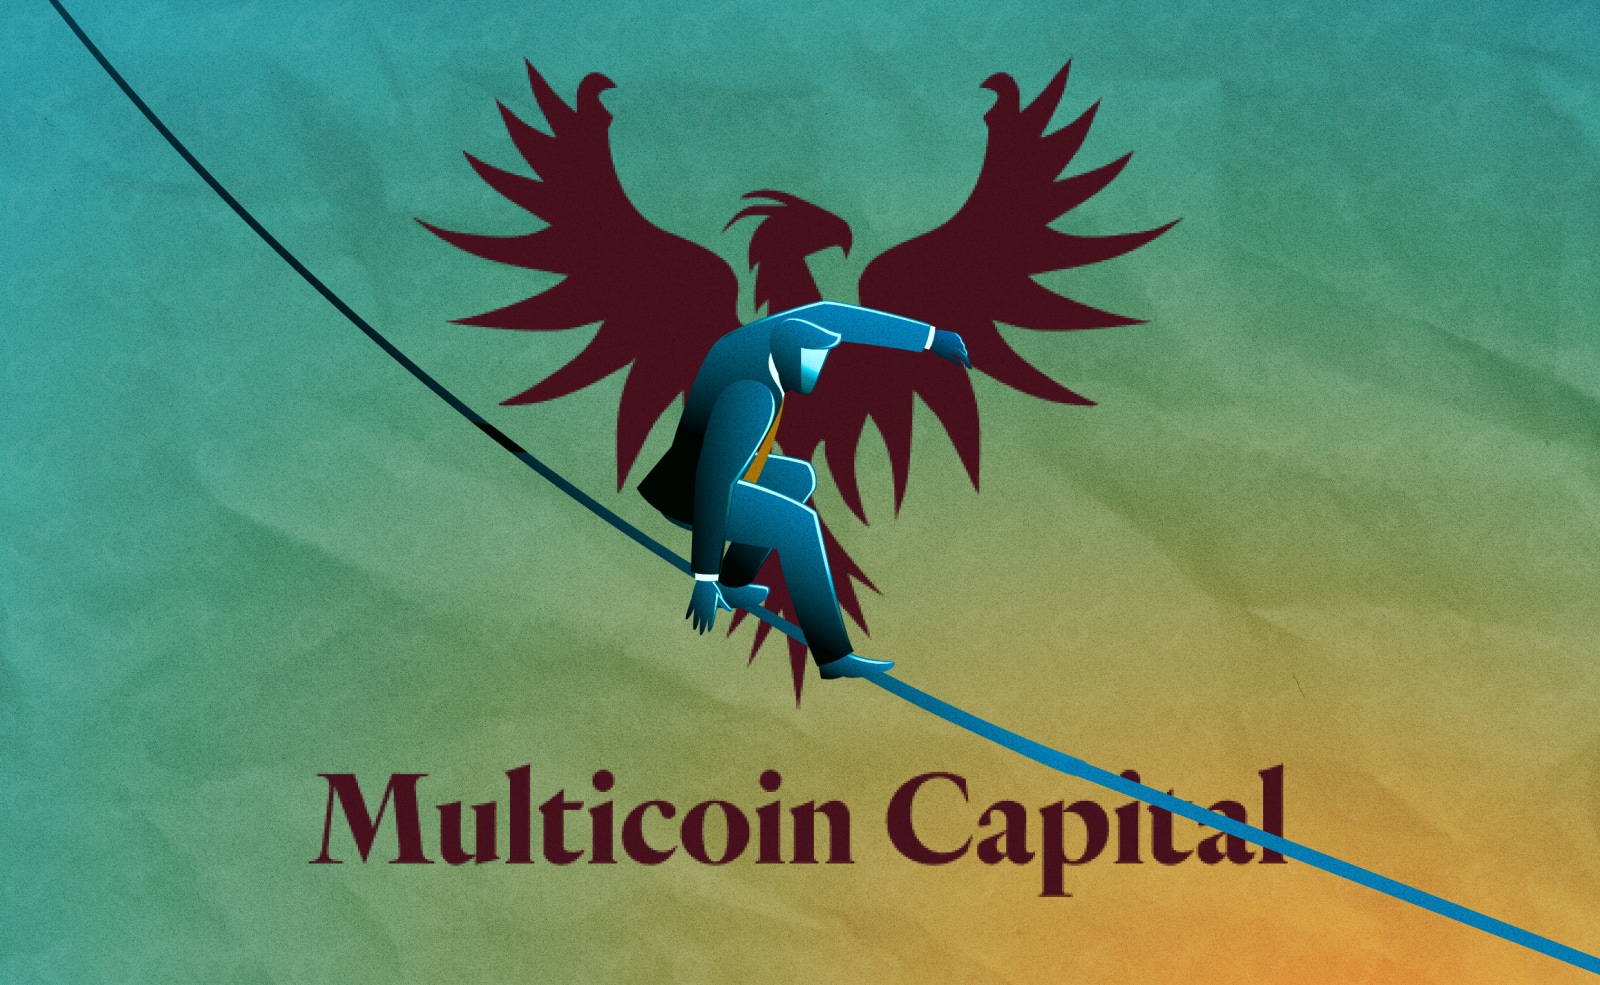 Multicoin Capital стремительно катится к банкротству Стоимость портфеля фонда сократилась на 90% за последние 11 месяцев